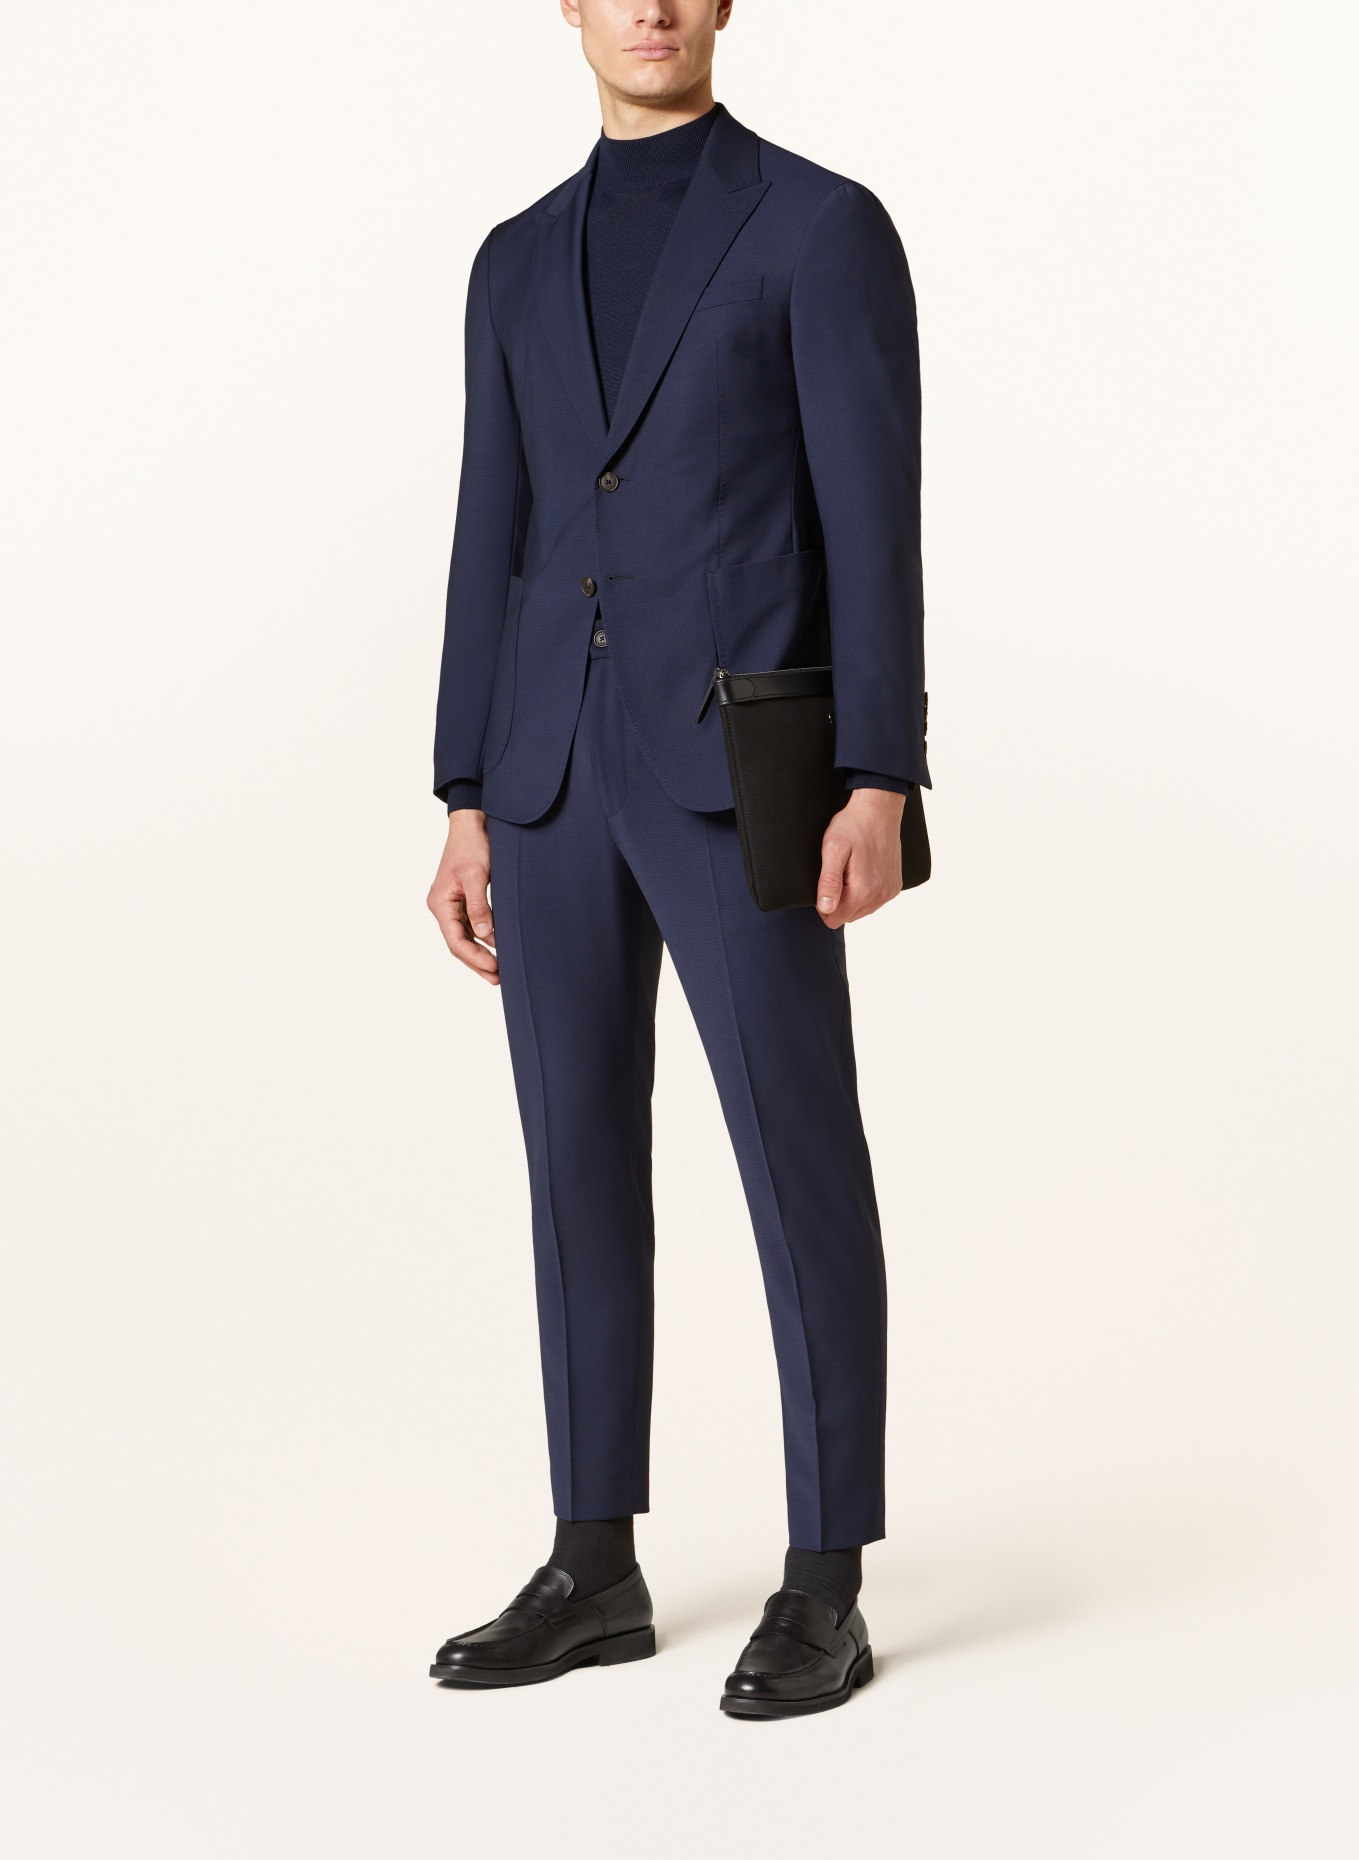 JOOP! Suit jacket HAKEEM slim fit, Color: 401 Dark Blue                  401 (Image 2)